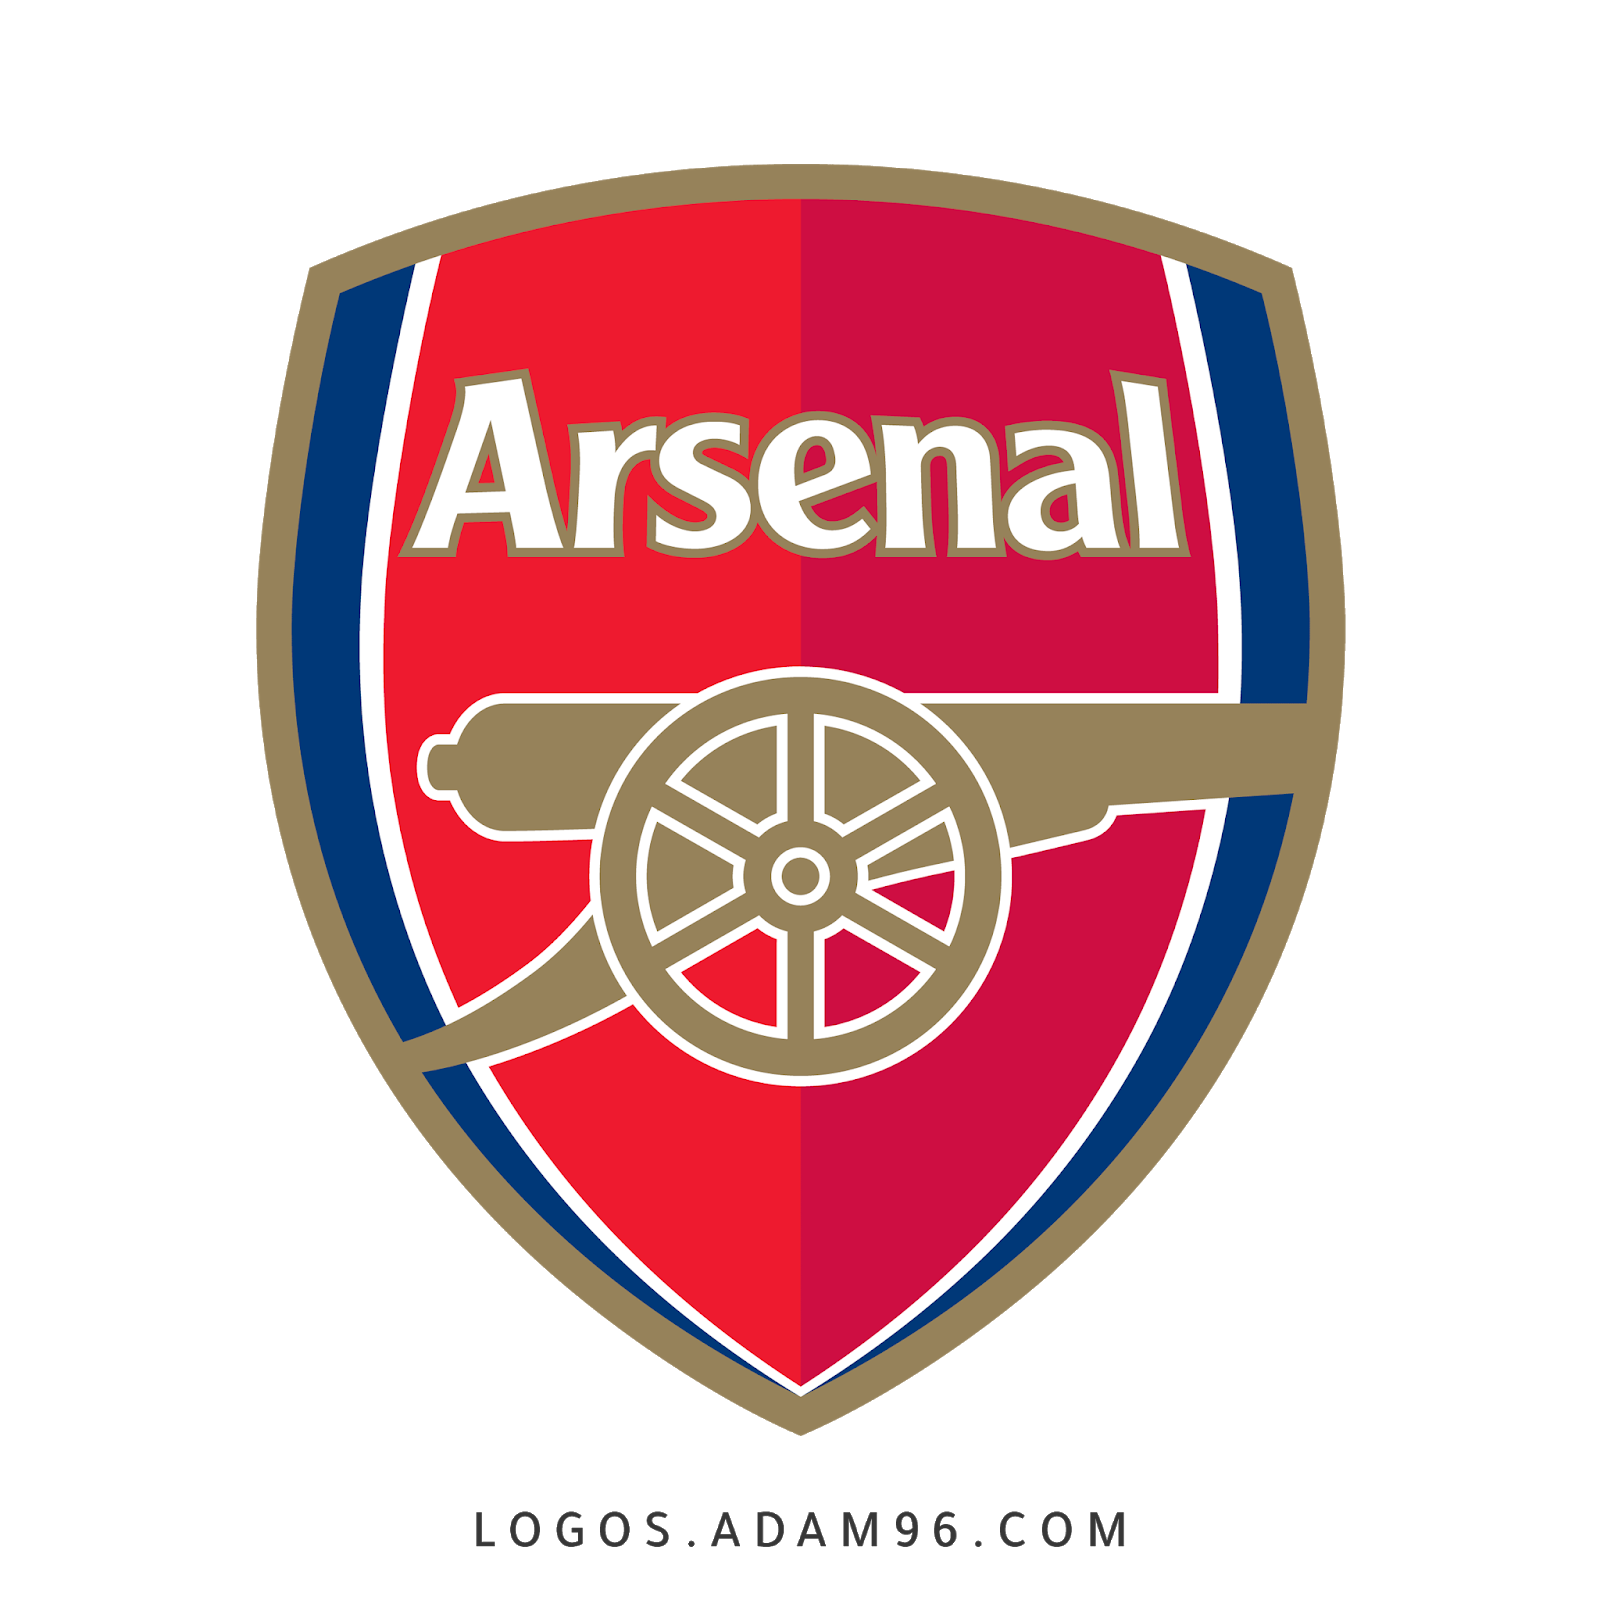 Download Logo Arsenal Png High Quality Free Logo Download Logos